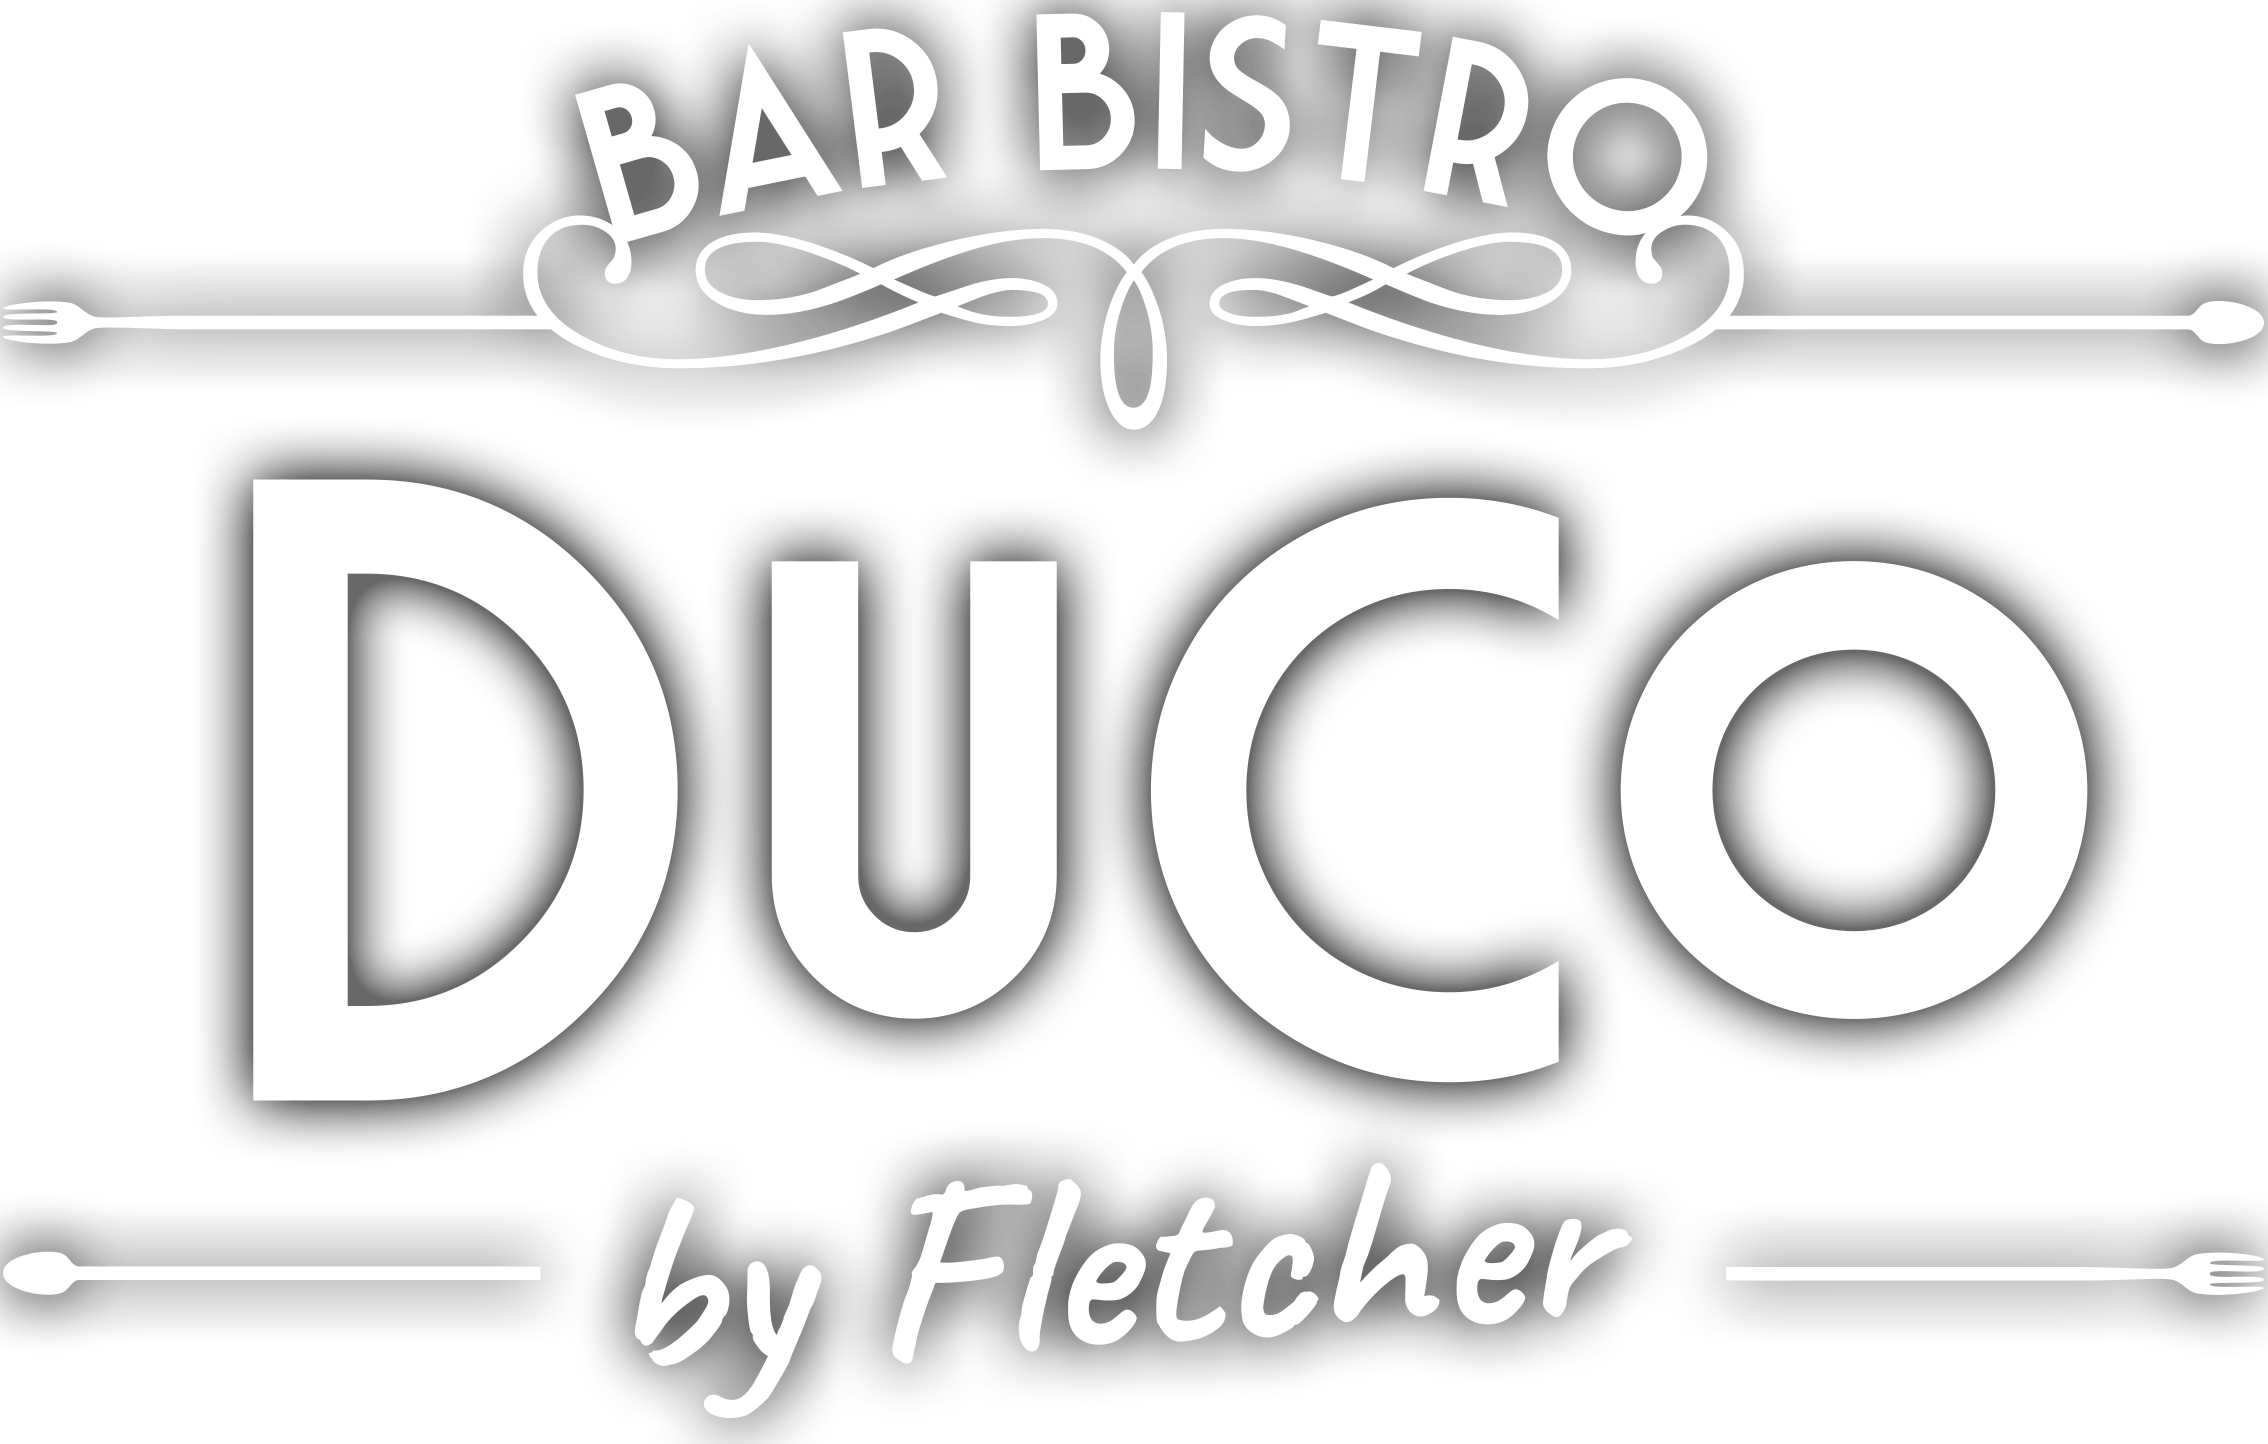 3-gangen keuzediner voor 2 personen bij een Bar Bistro DuCo naar keuze!